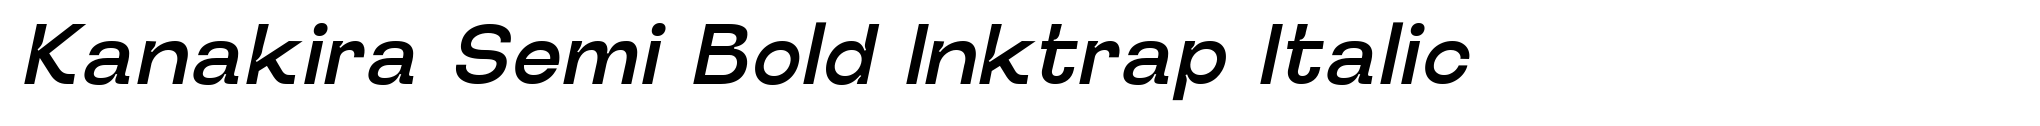 Kanakira Semi Bold Inktrap Italic image